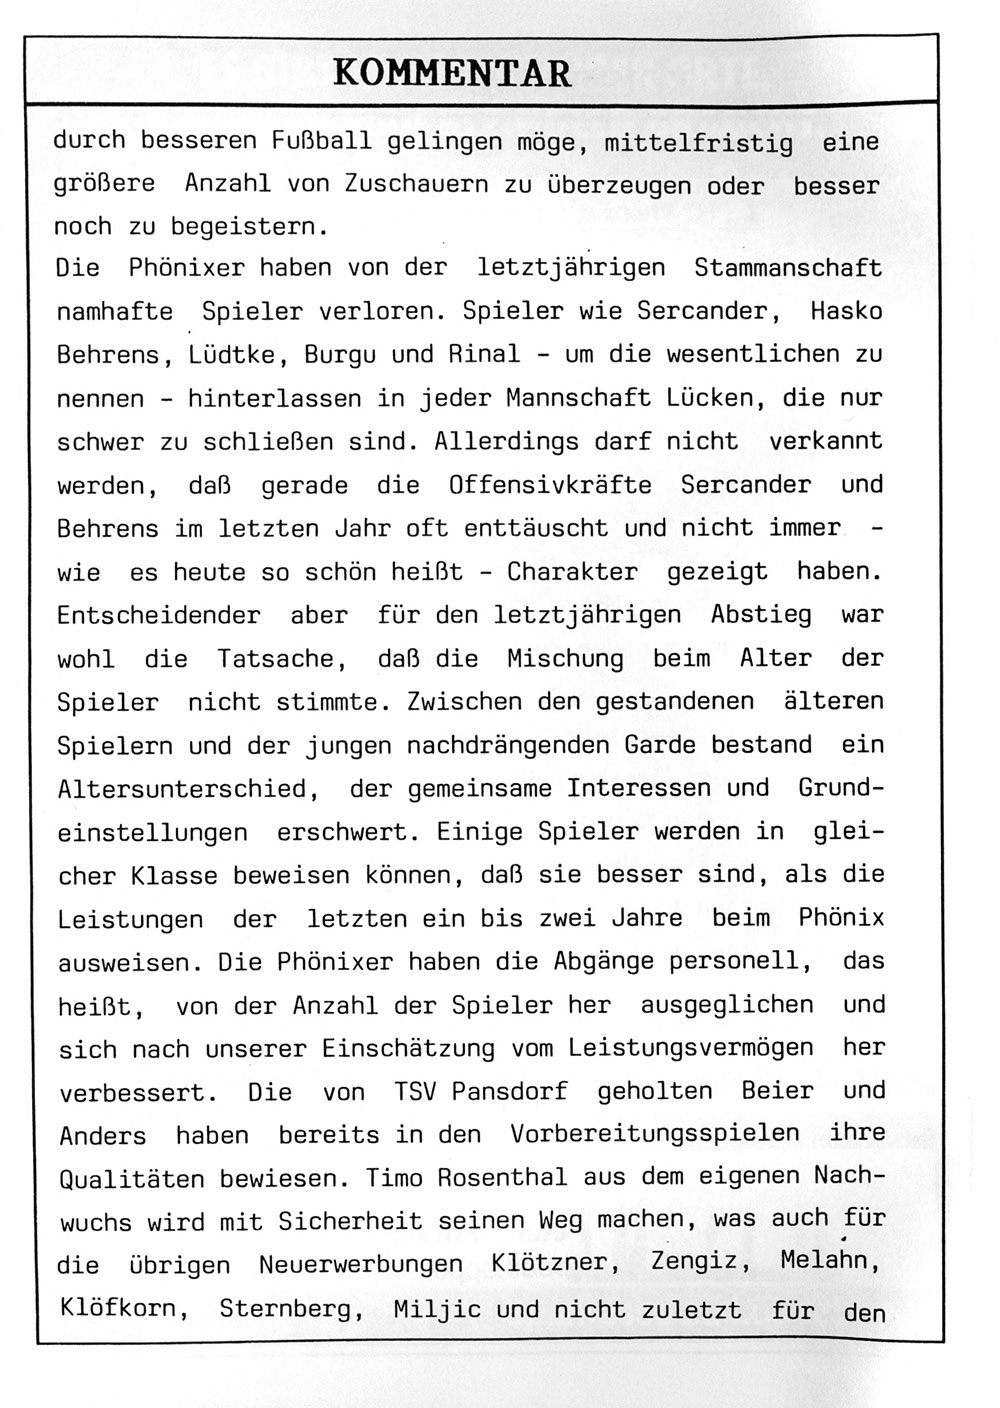 Der PHÖNIX EXPRESS, Heft 92, v. 17.8.1997